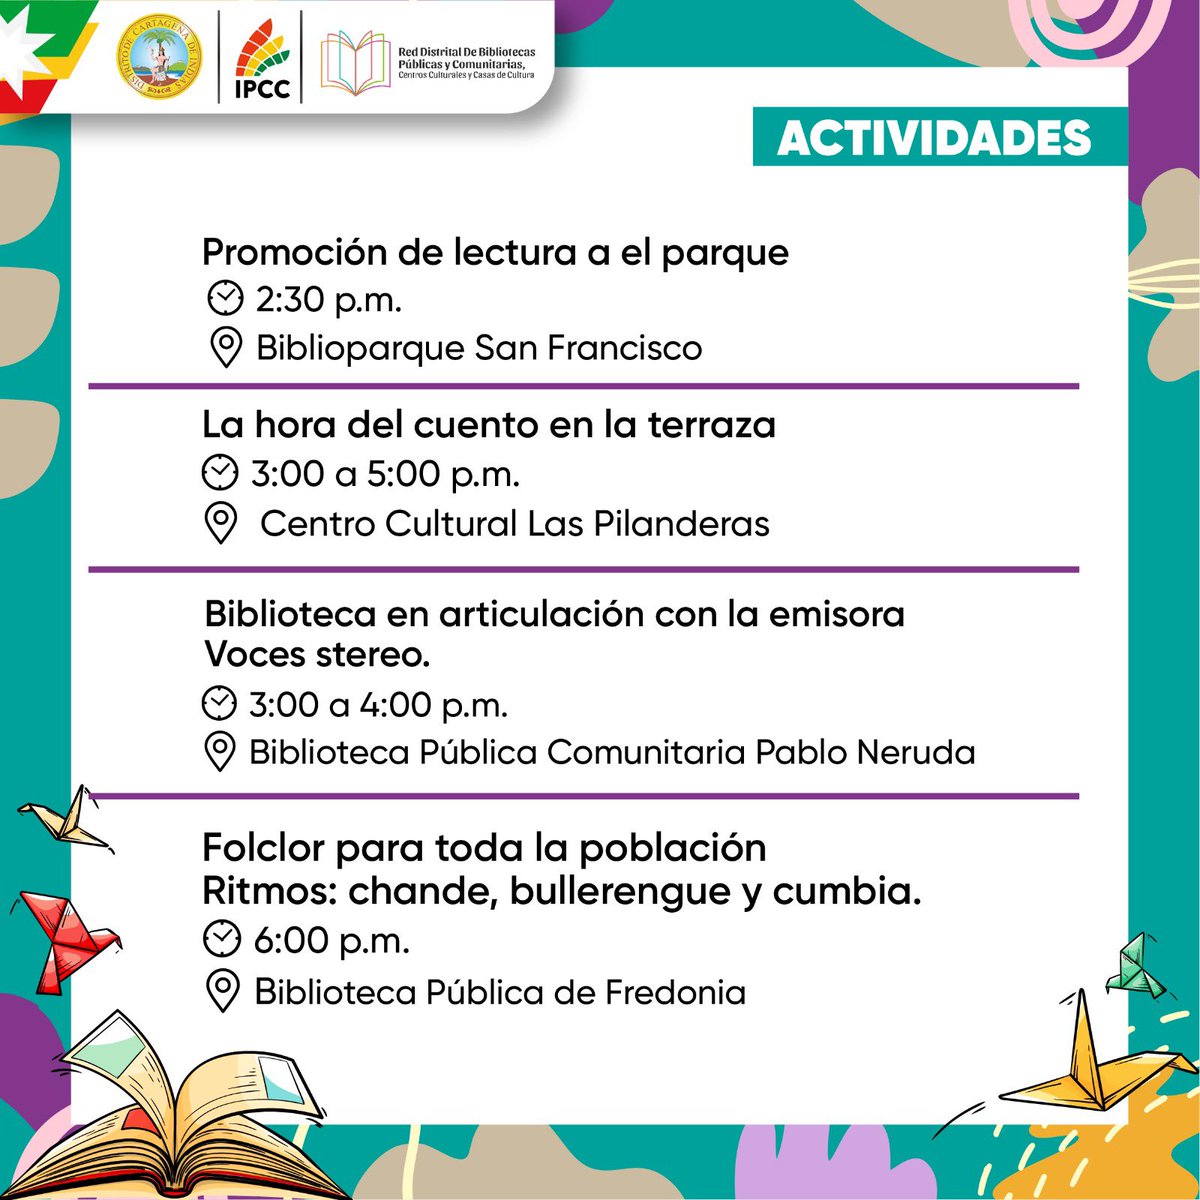 Ipcc_Cartagena tweet picture